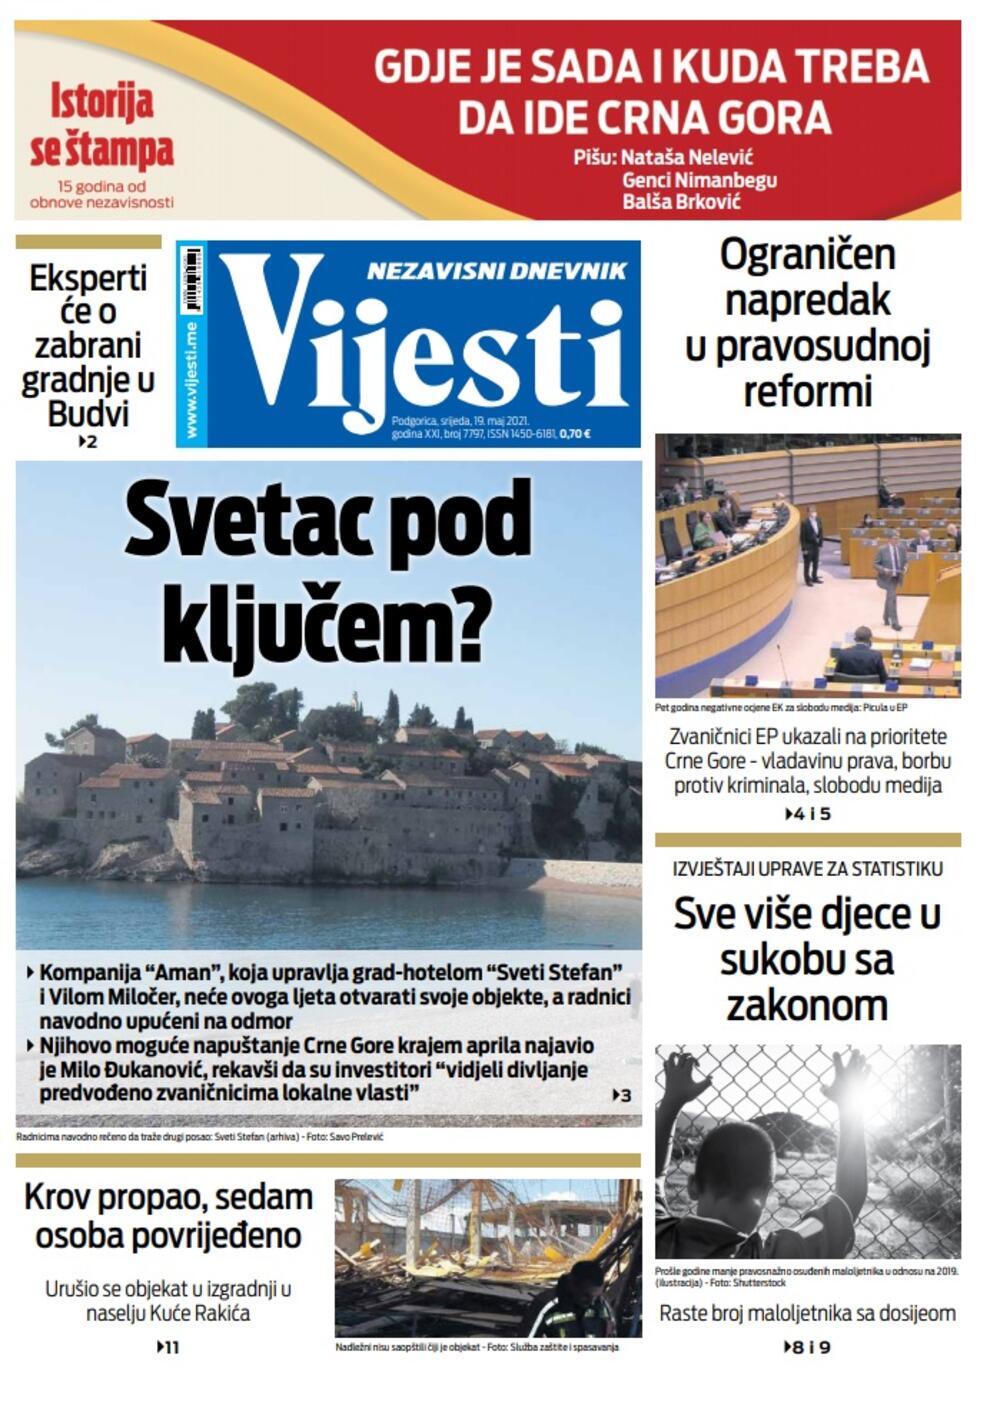 Naslovna strana "Vijesti" za srijedu 19. maj 2021. godine, Foto: Vijesti